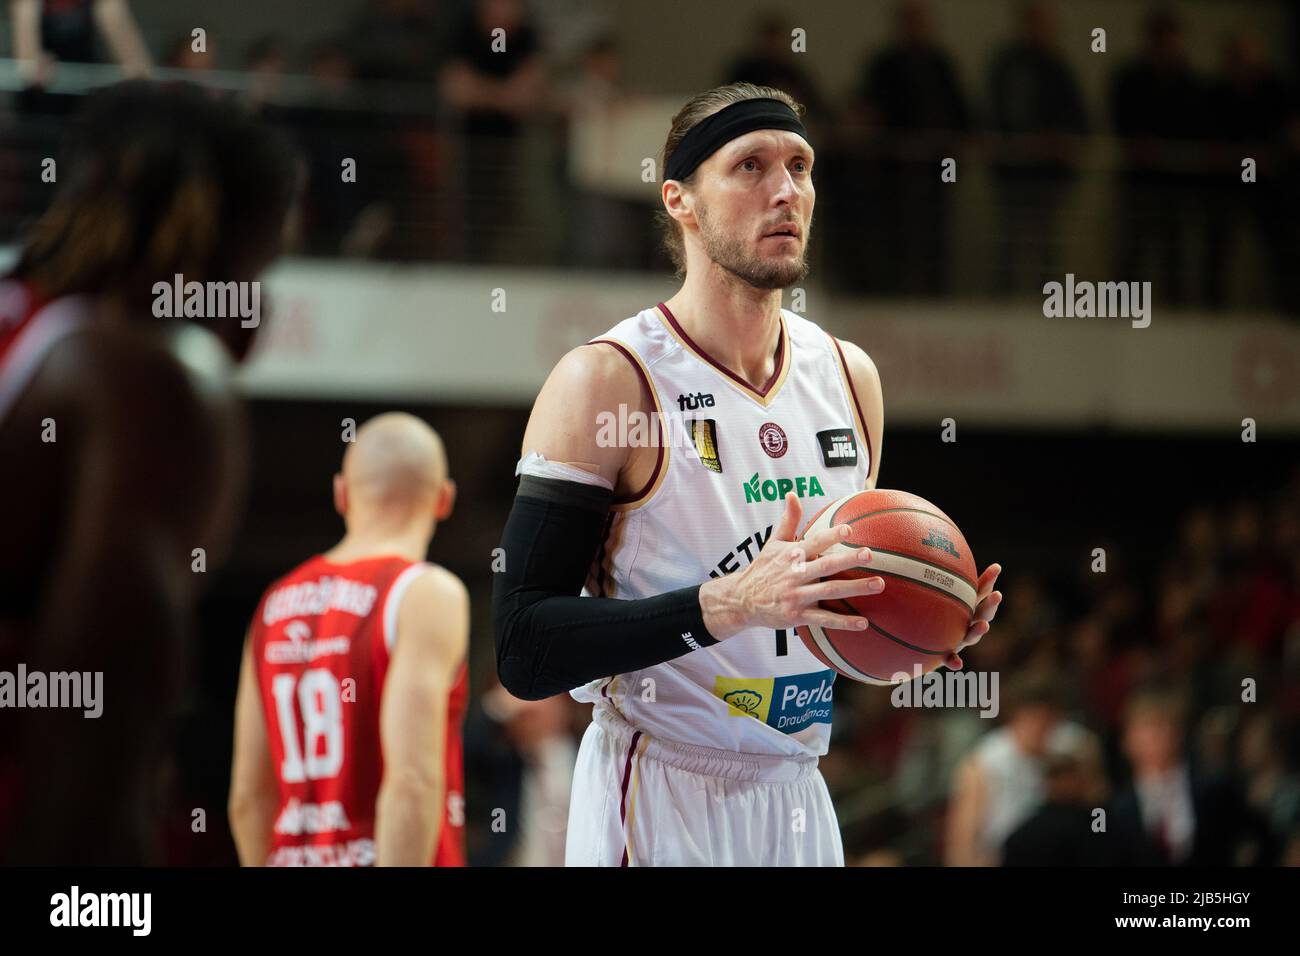 Liga lituana de baloncesto fotografías e imágenes de alta resolución - Alamy